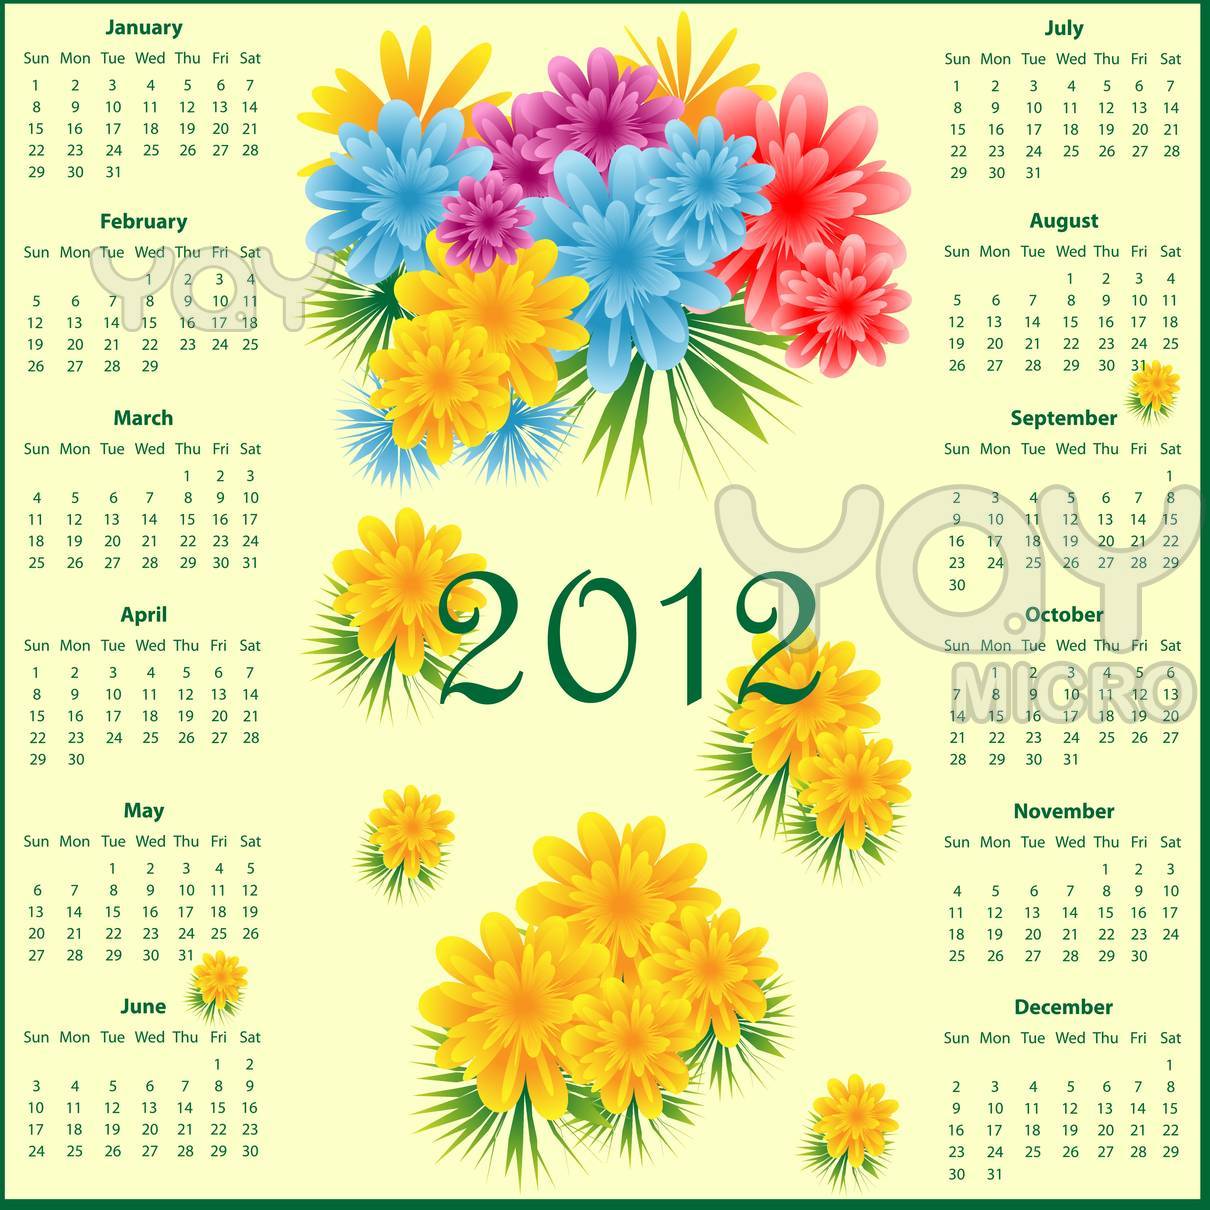 http://1.bp.blogspot.com/-P6FtCTpphU0/TlsS-3s076I/AAAAAAAAFE0/D6xkhBAa77Y/s1600/calendar-2012-with-flowers-525978.jpg